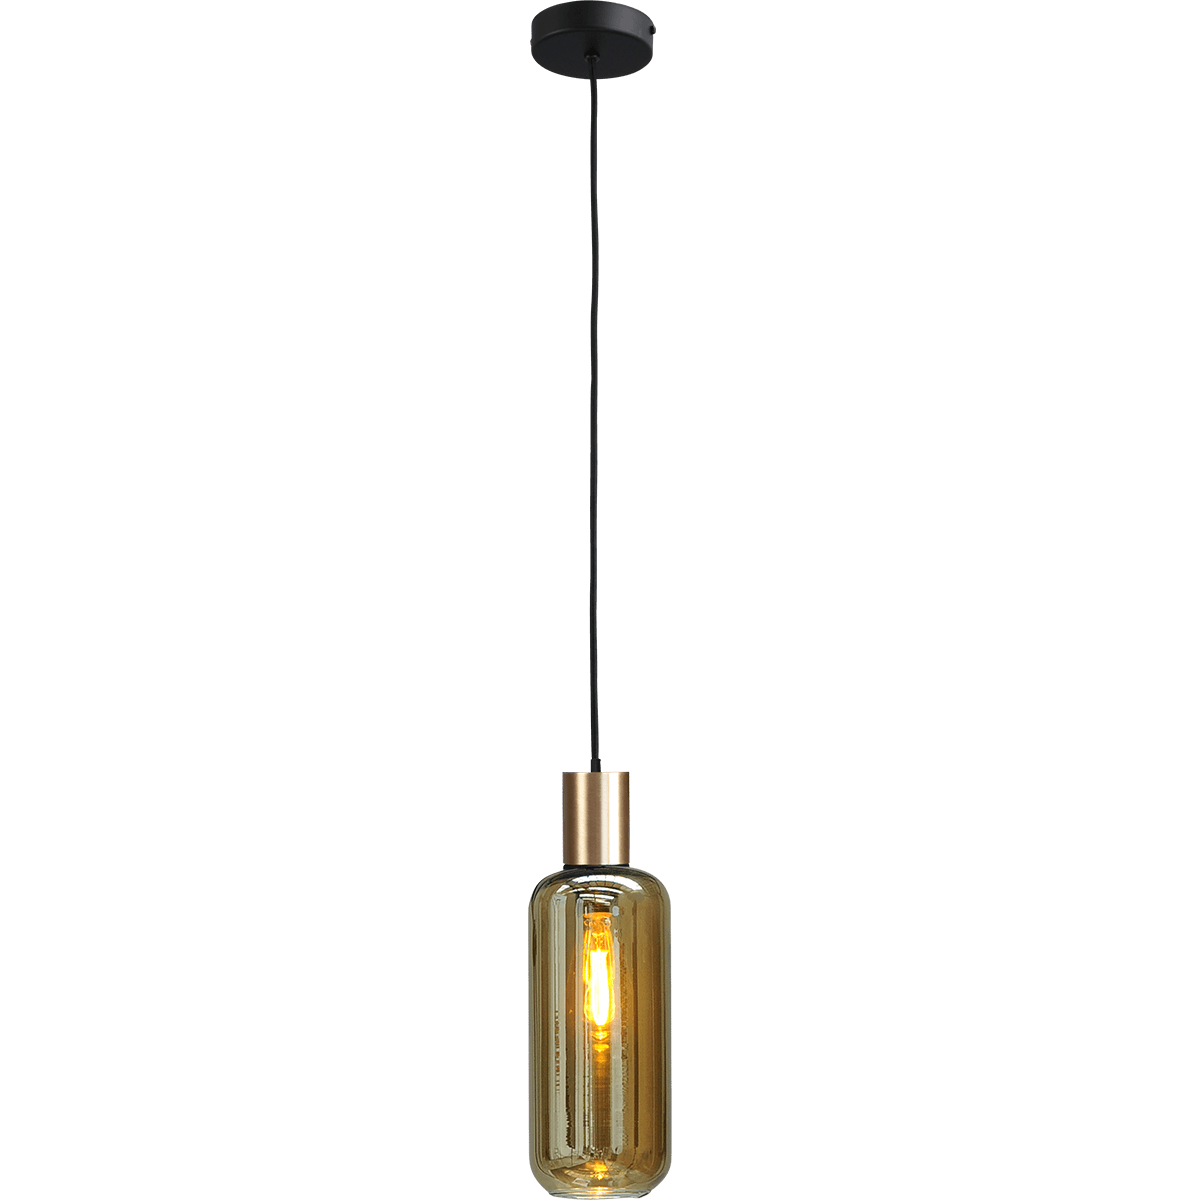 Hanglamp Bounty 1-lichts mat zwart/mat goud - kabel pvc 200cm - glas Smoke 62260-05-5 - MASTERLIGHT